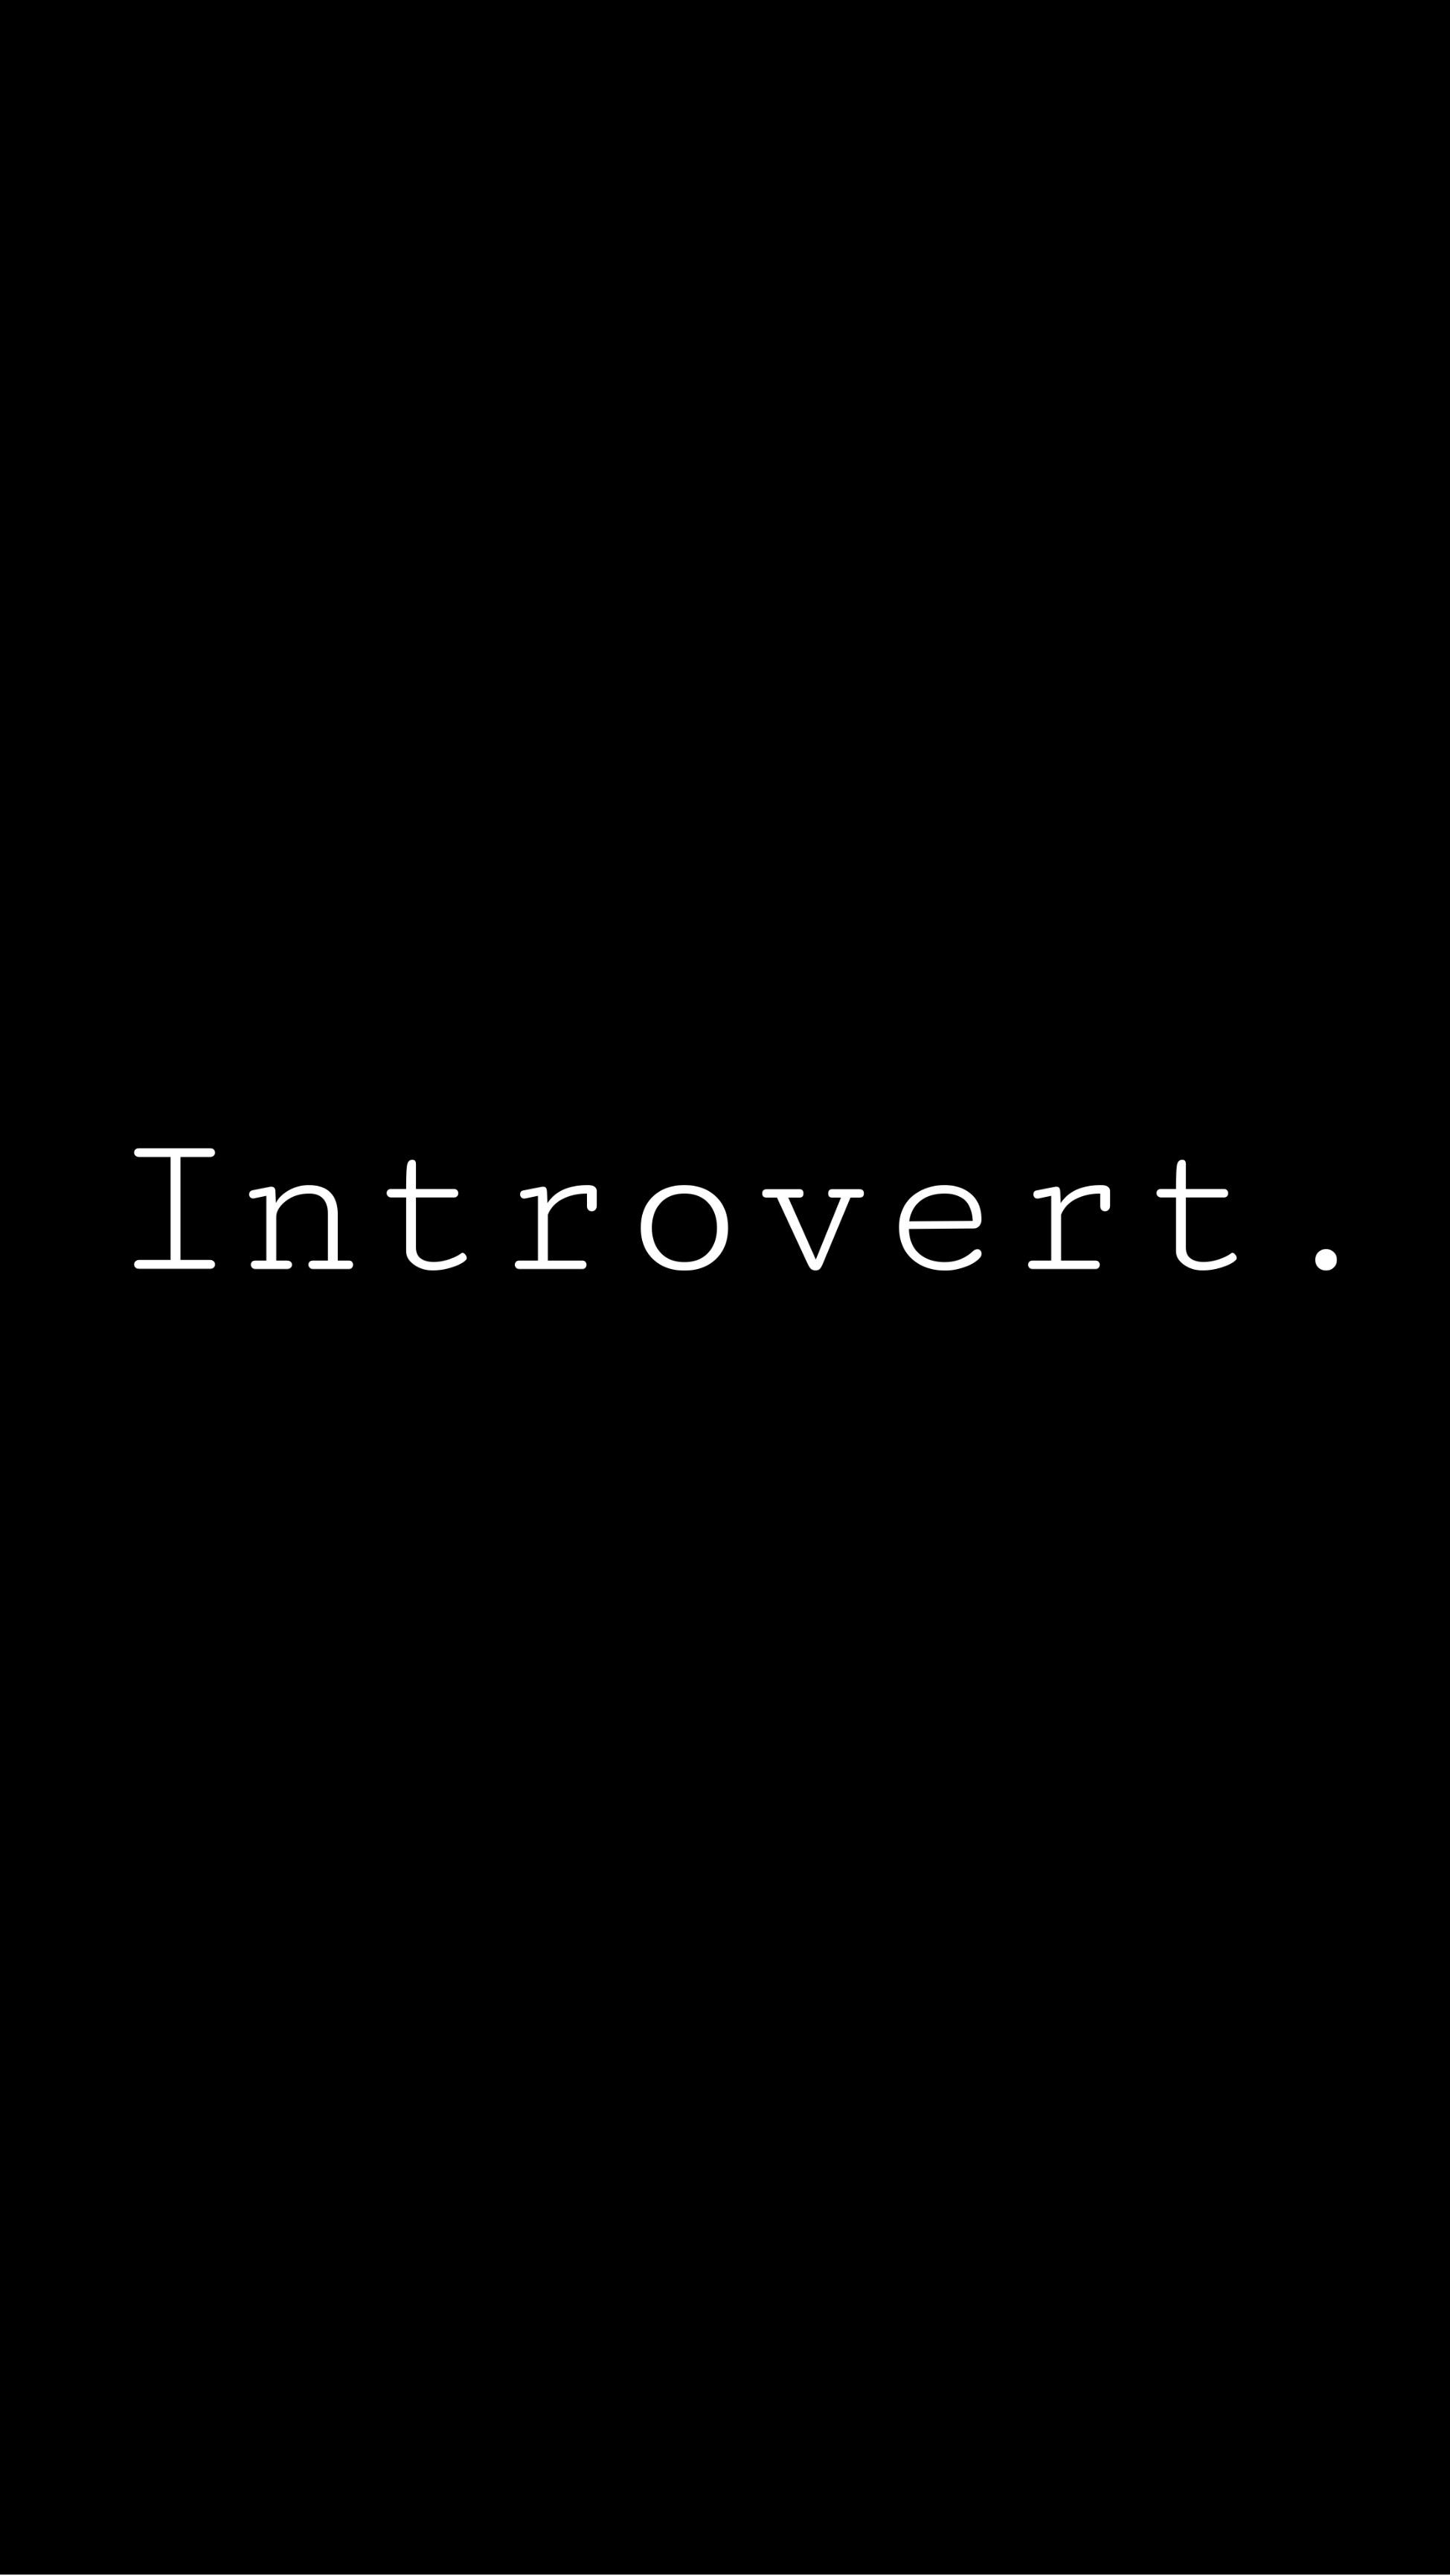 An introvert wallpaper I made because im an introvert